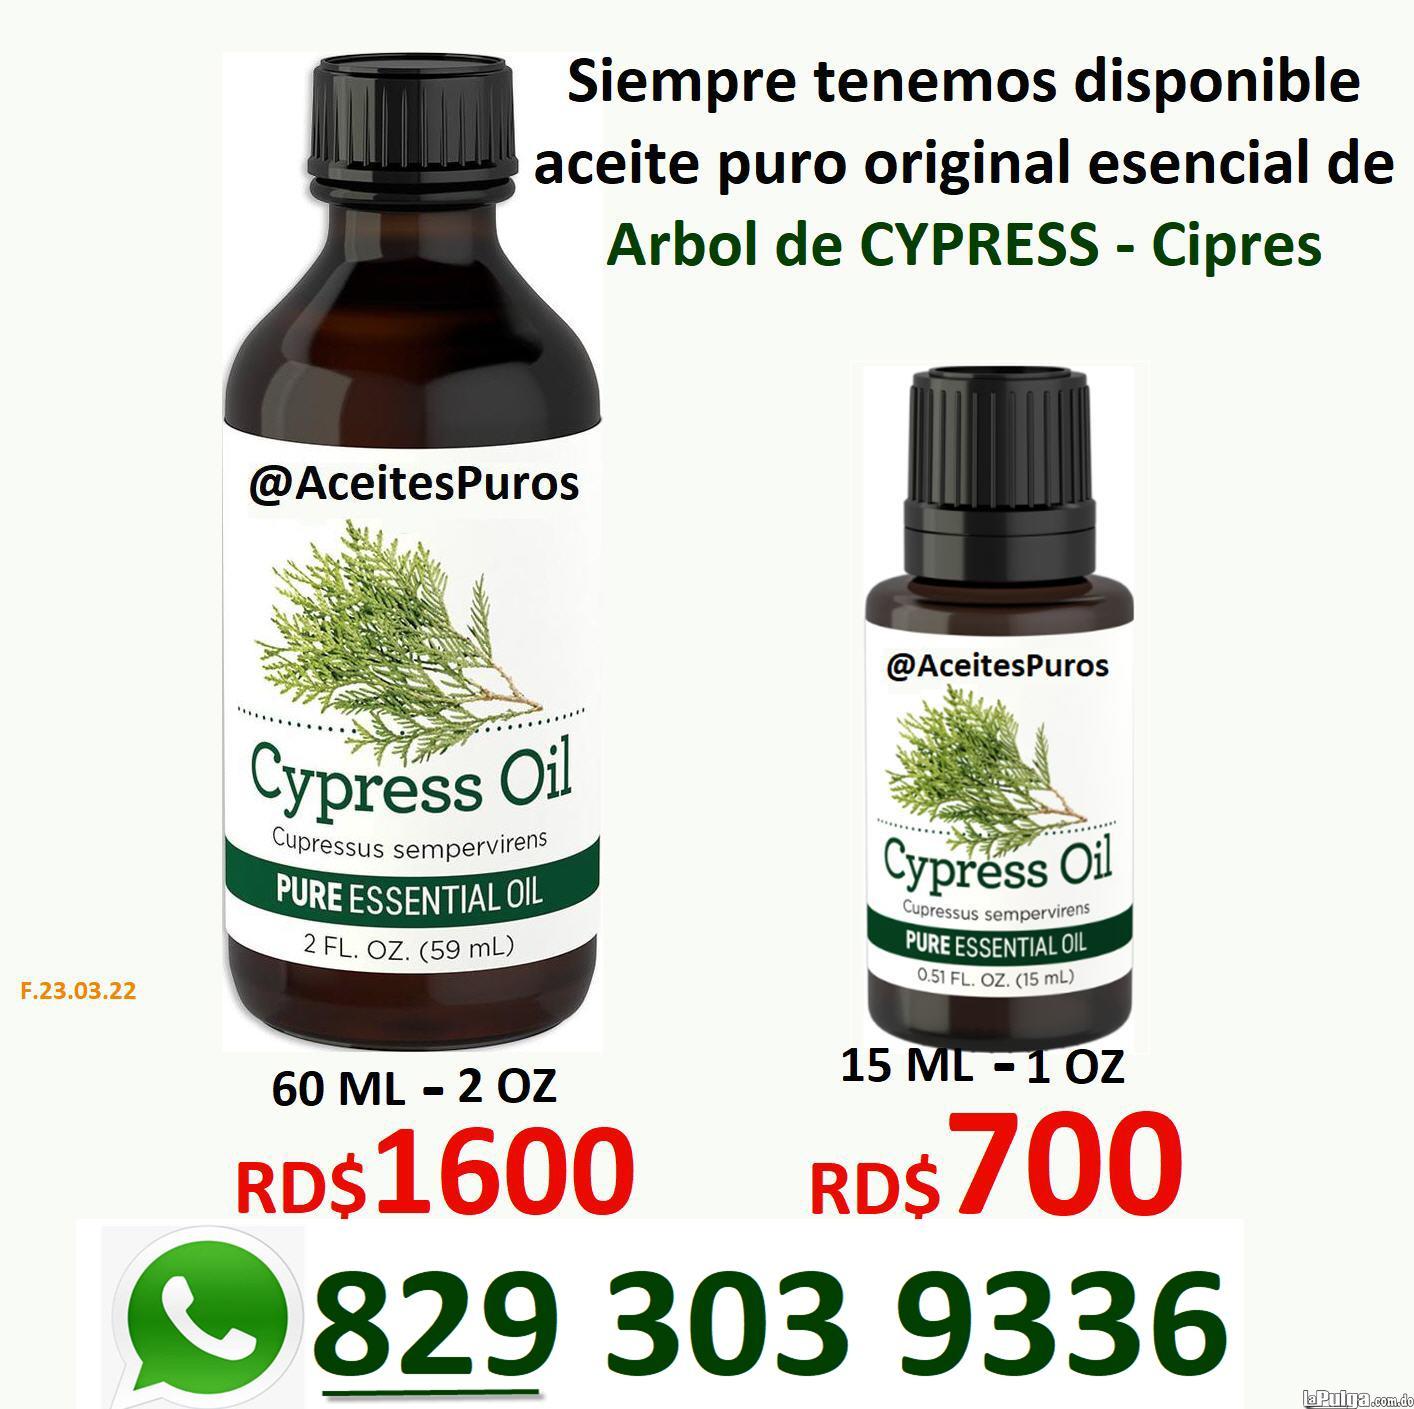 CYPRESS aceite puro esencial de cipres en RD Foto 7080877-1.jpg